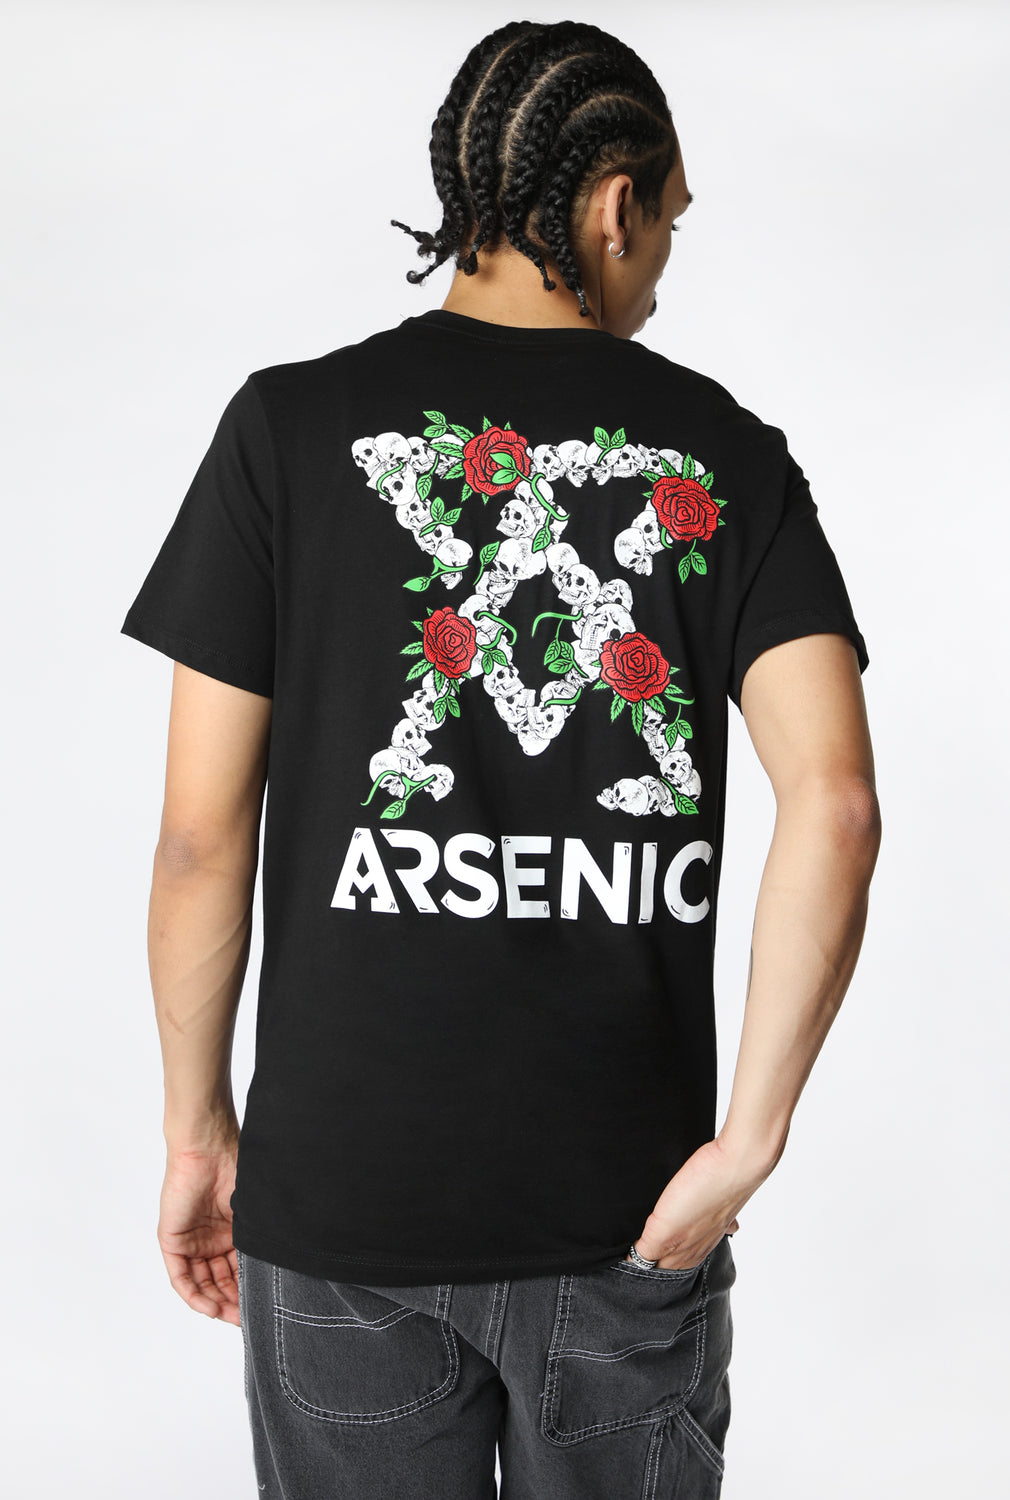 T-Shirt Imprimé Arsenic Homme Noir